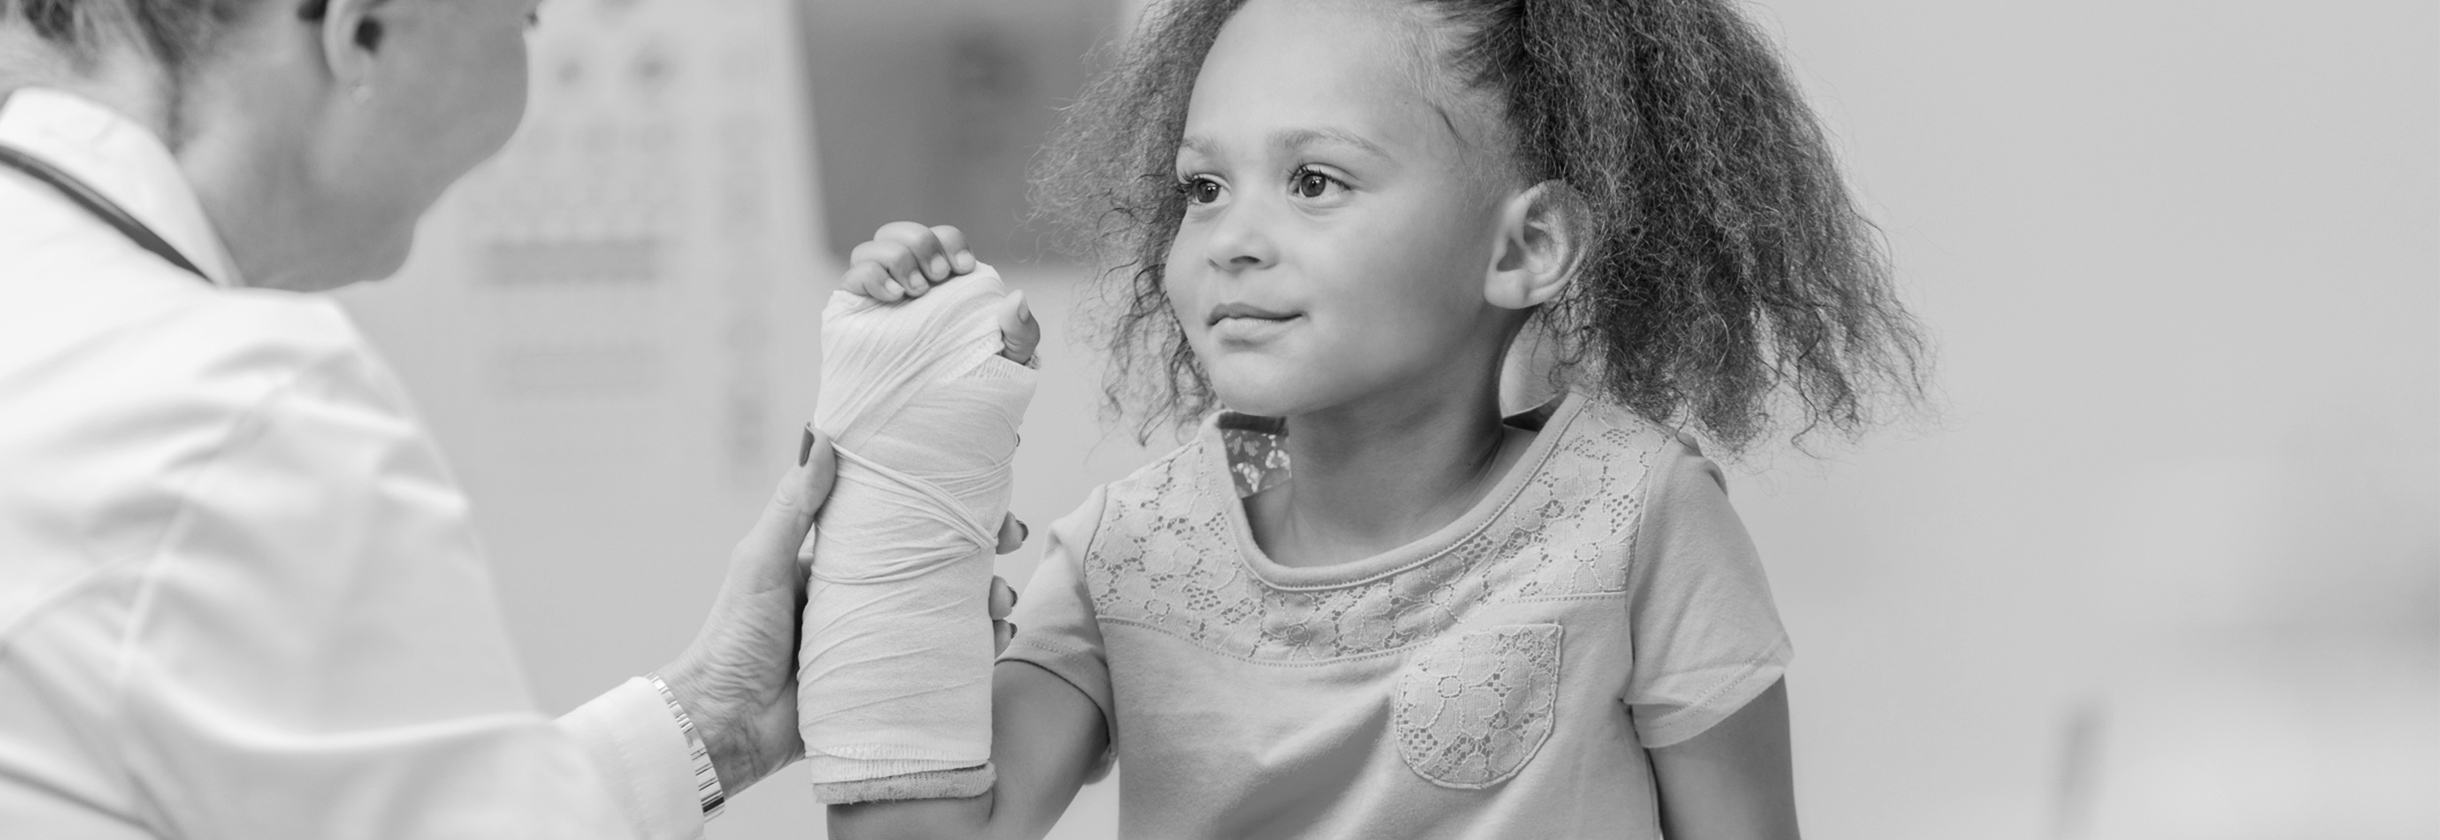 Orthopedic doctor checks on young girl's broken arm